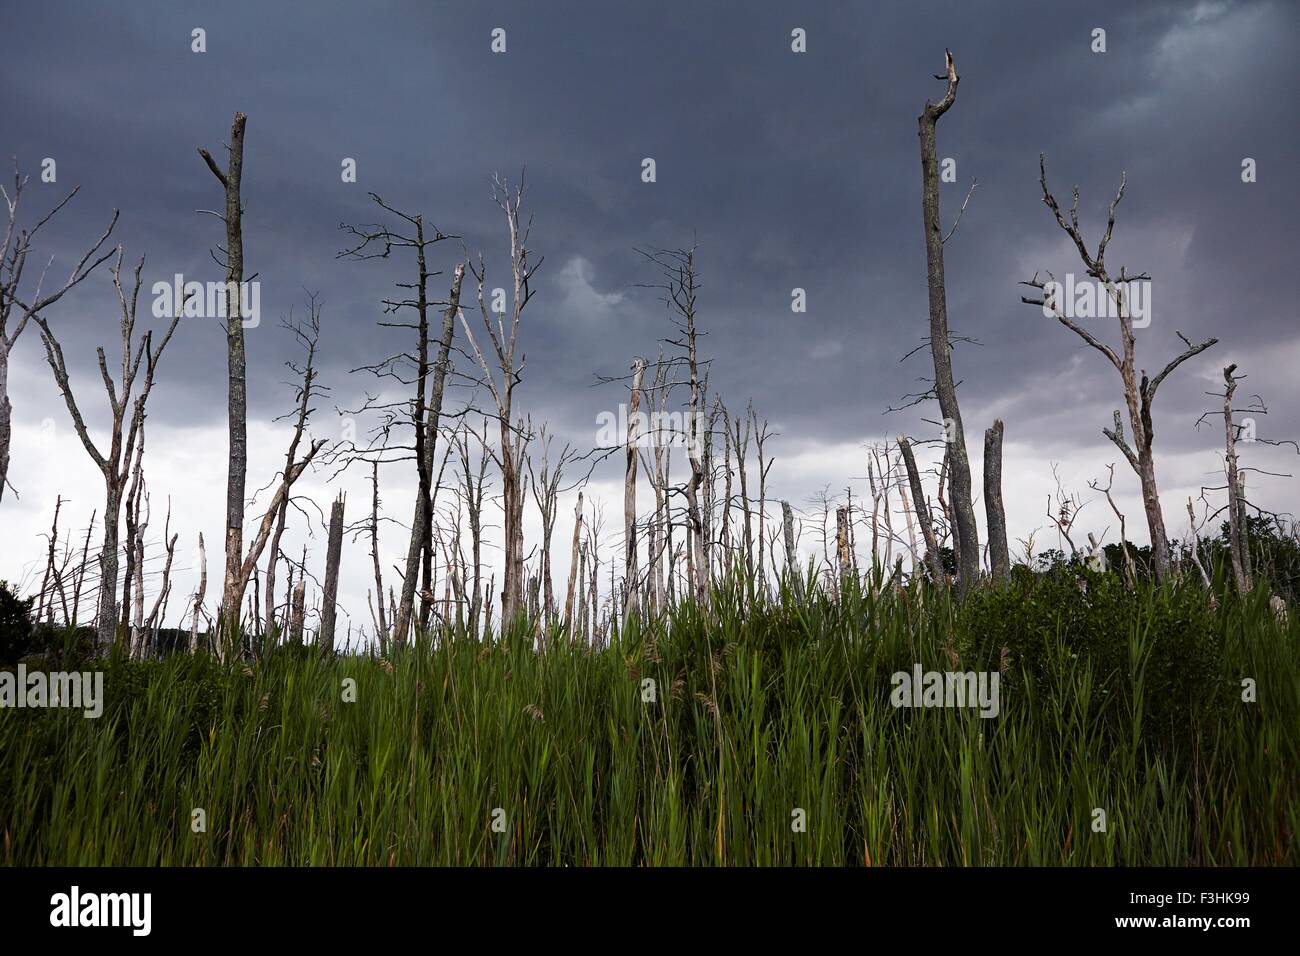 Morto e rotture di alberi contro il cielo drammatico Foto Stock